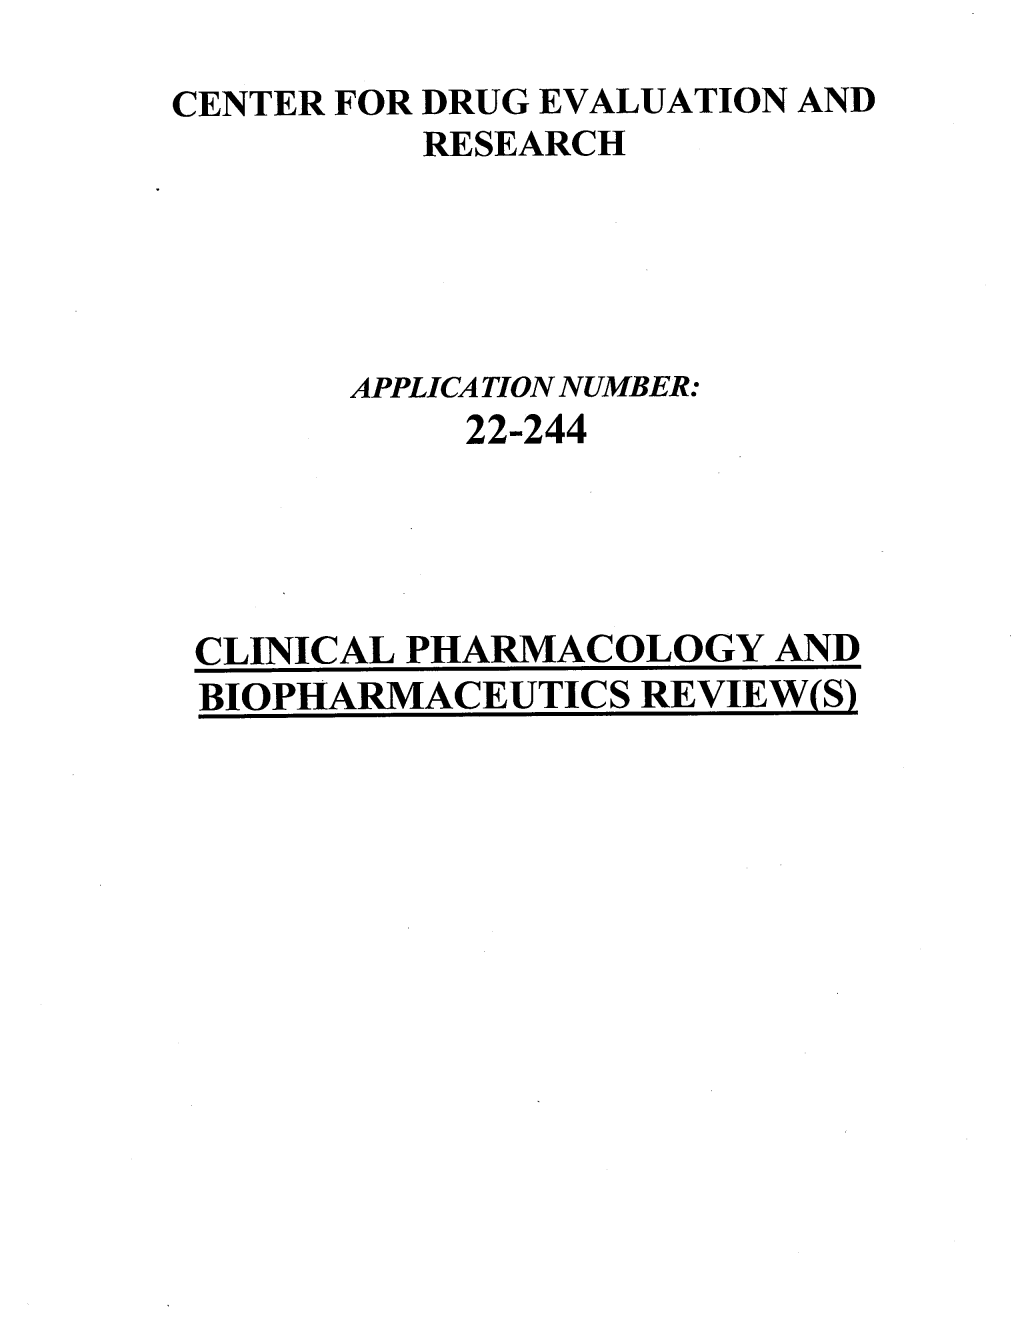 22-244 Biopharmaceutics Review(S)